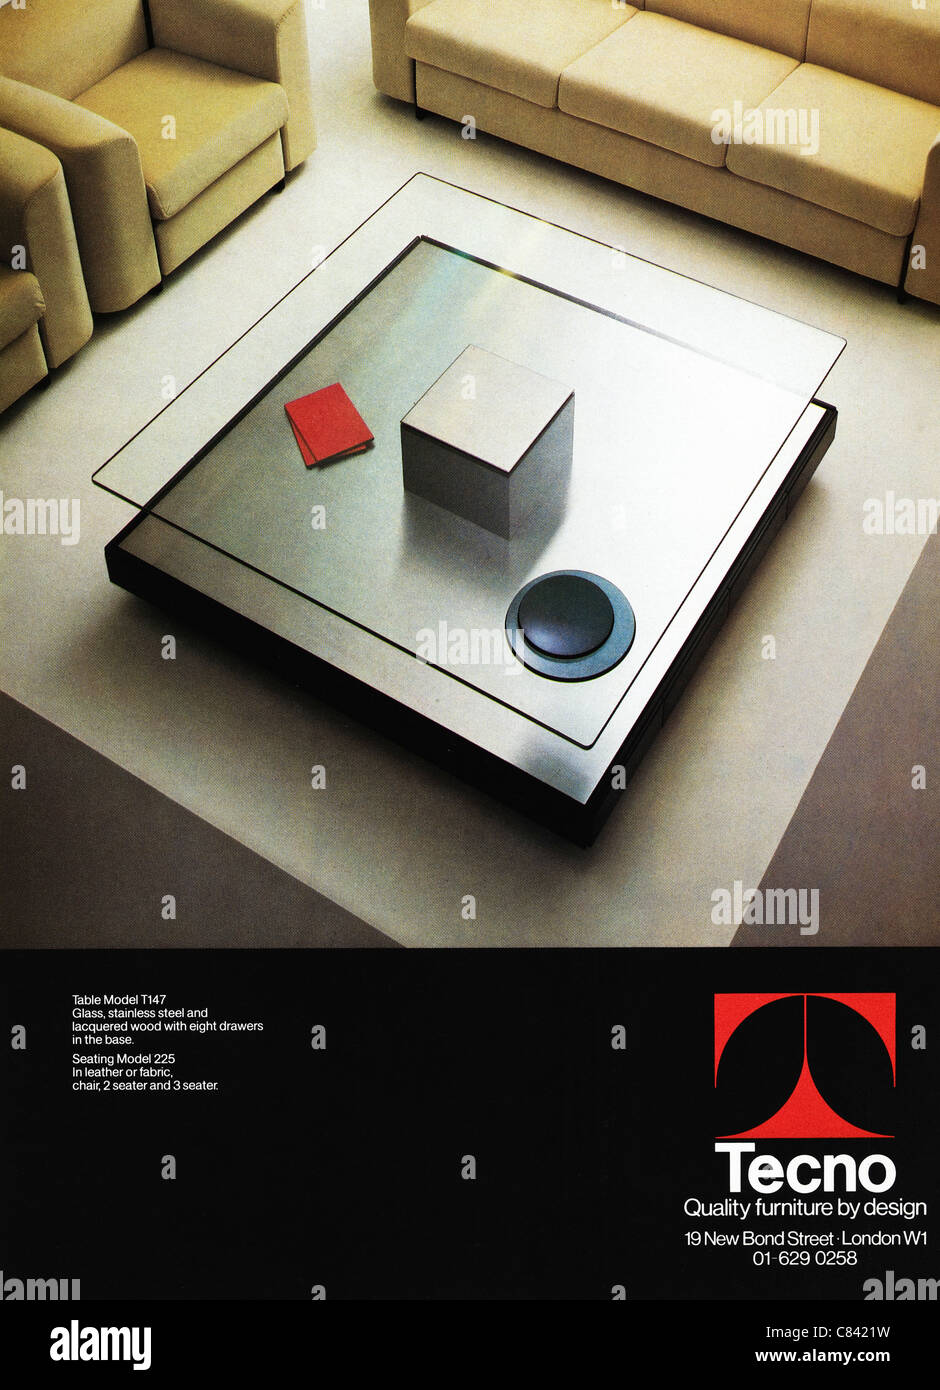 Pagina piena annuncio rivista circa 1984 pubblicità TECNO arredamento contemporaneo Foto Stock